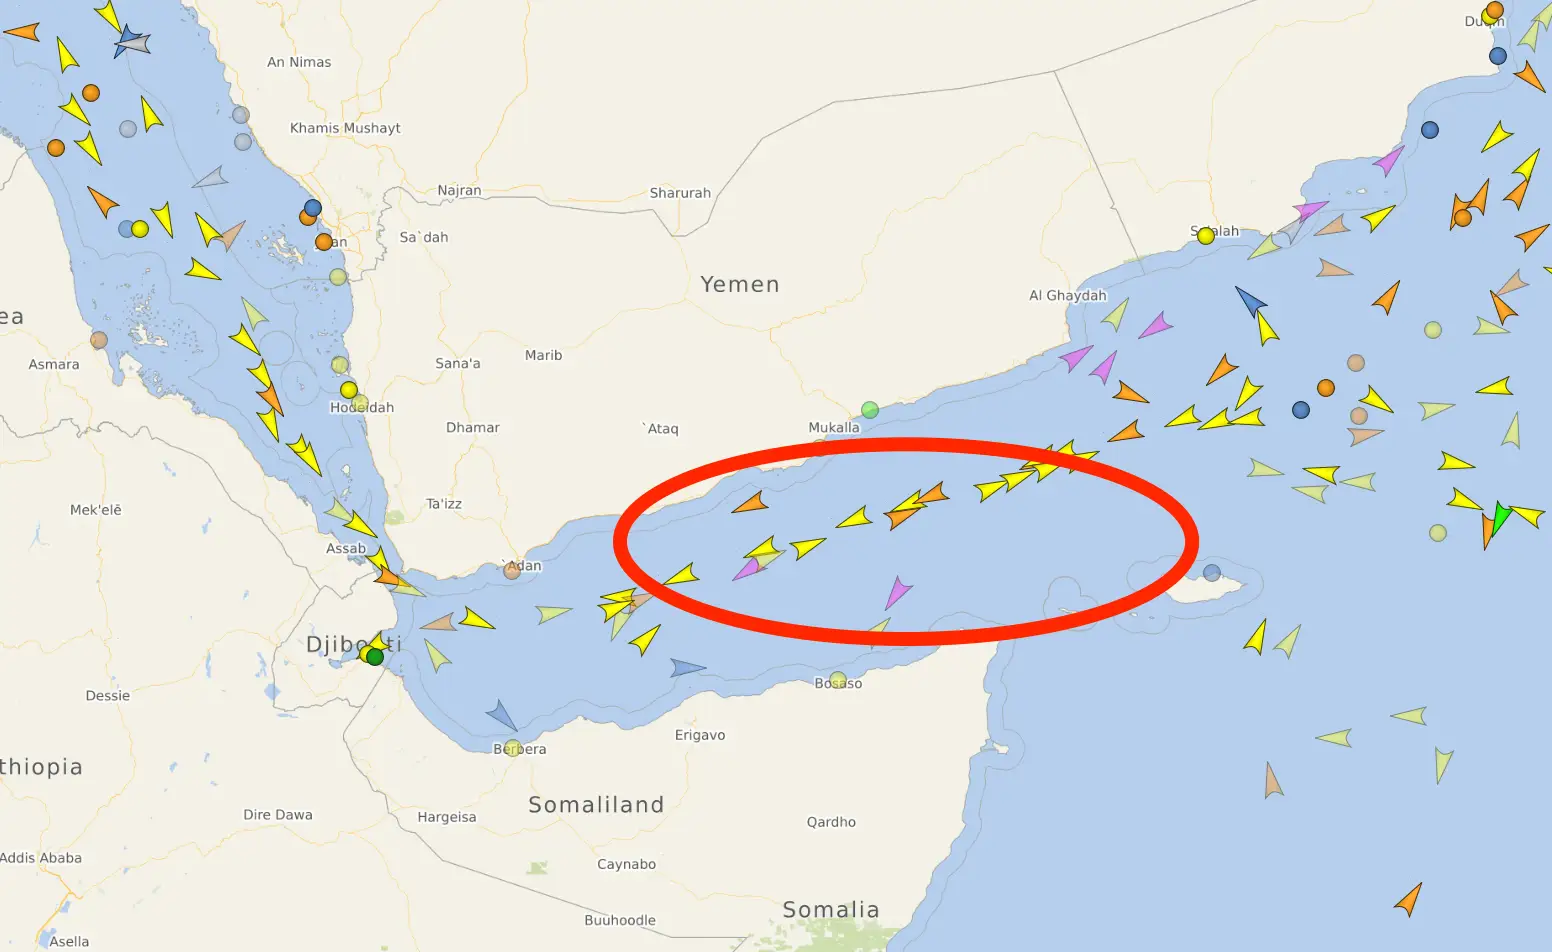 In de Golf van Aden veranderen schepen hun bestemming vaak naar "ARMED GUARD ONBOARD", om zo piraten af te schrikken.